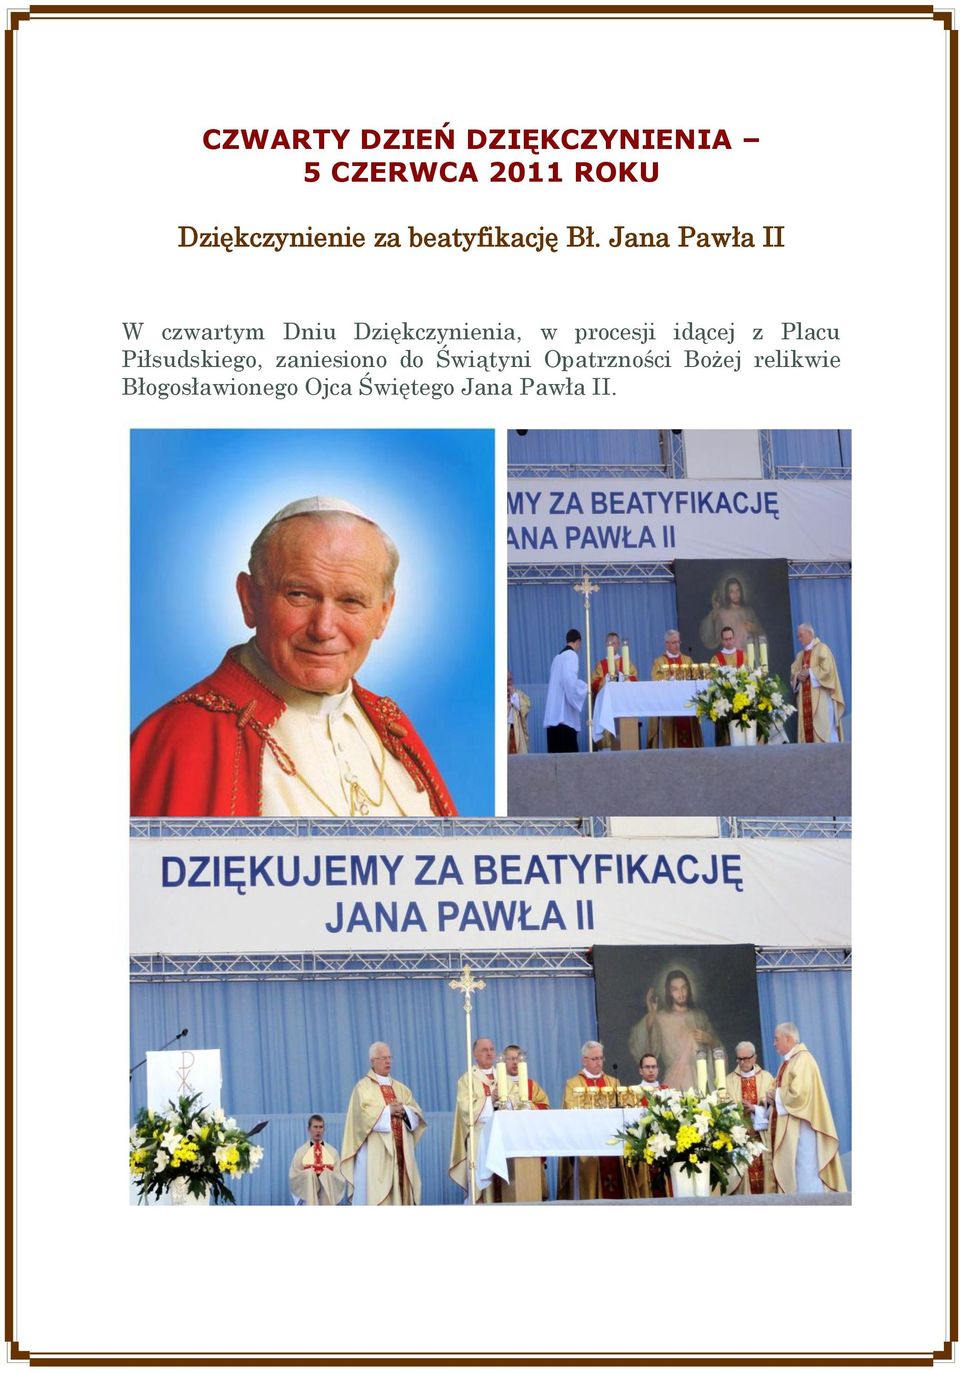 Jana Pawła II W czwartym Dniu Dziękczynienia, w procesji idącej z